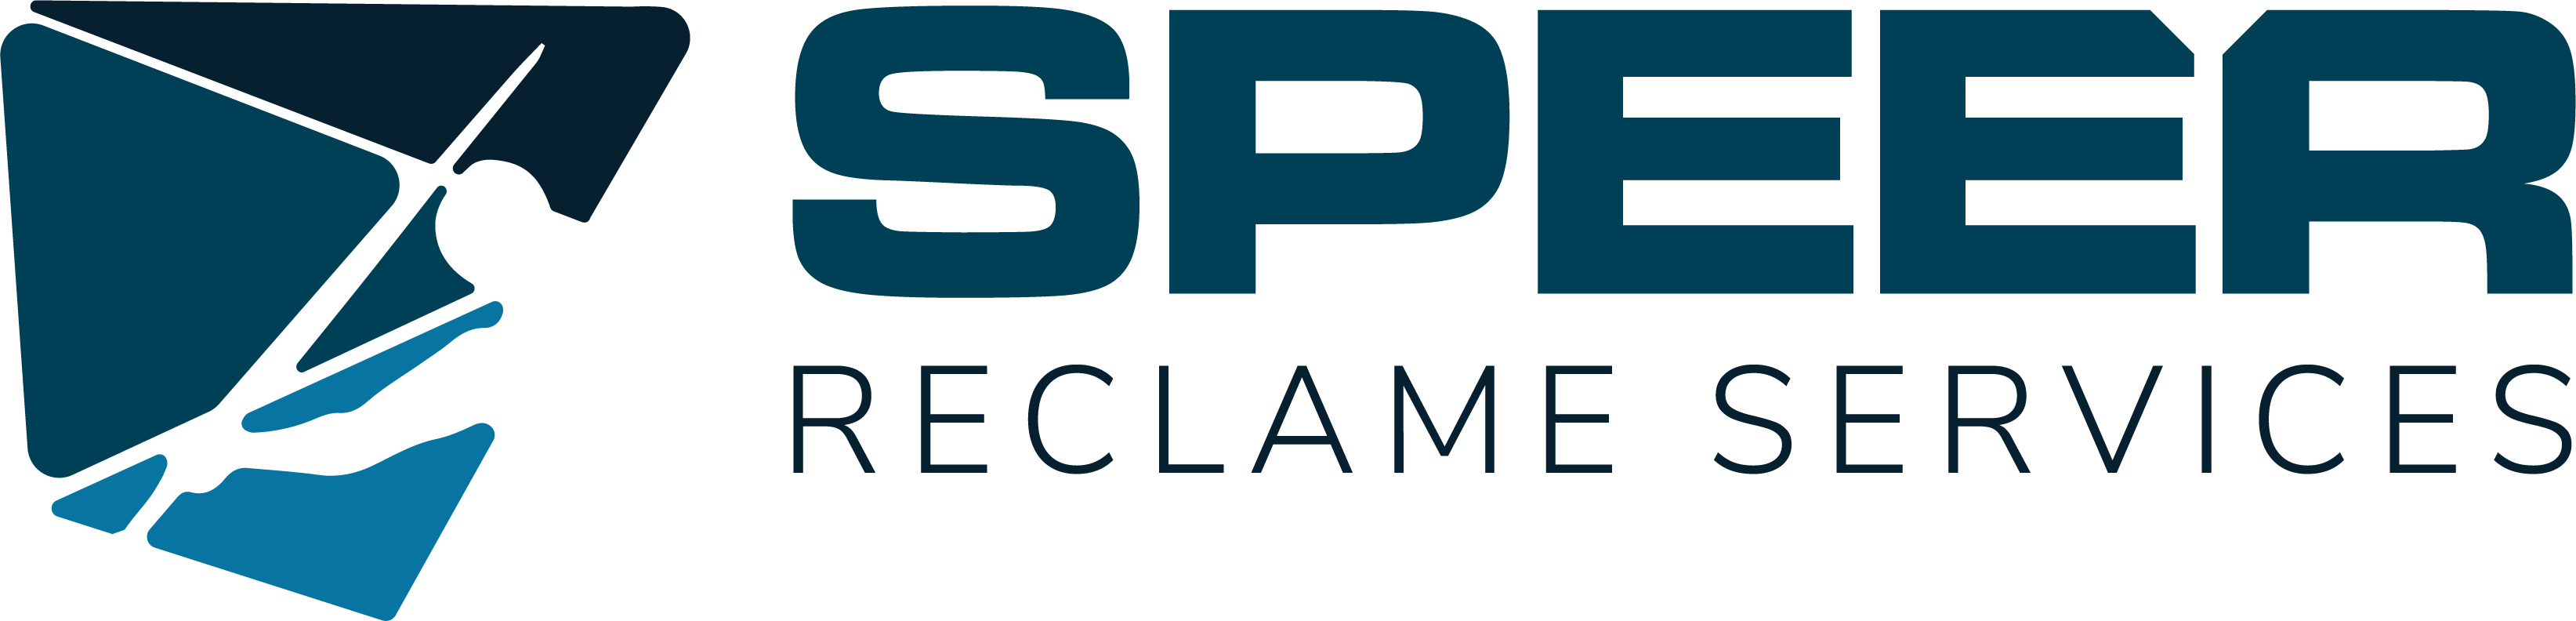 Speer Logo - Door SIBON erkend signbedrijf Speer Reclame en Communicatie in ...